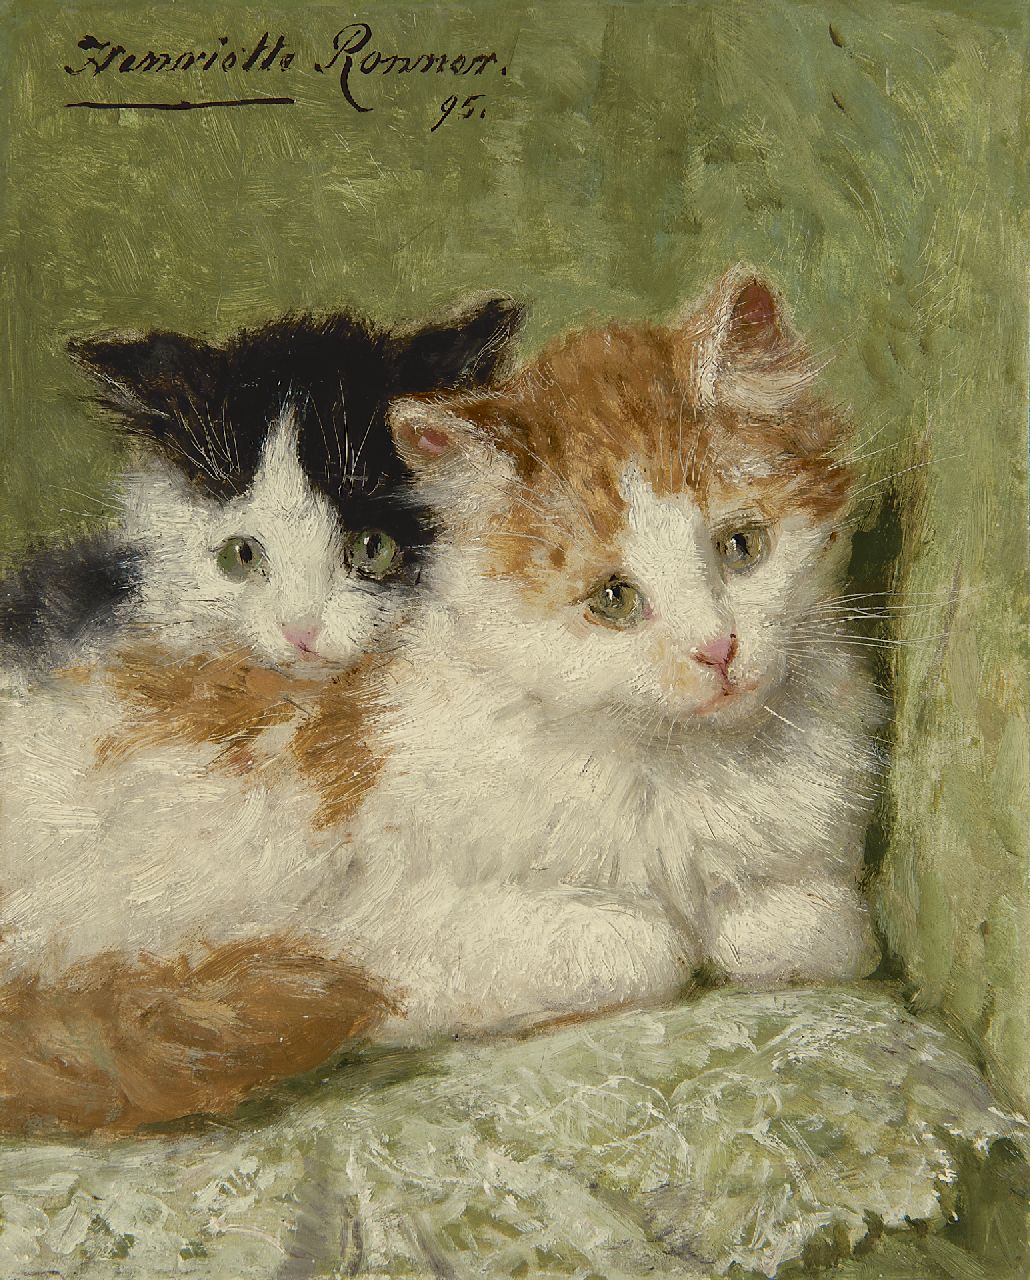 Ronner-Knip H.  | Henriette Ronner-Knip, Twee kittens op een kussen, olieverf op paneel 20,9 x 16,7 cm, gesigneerd linksboven en gedateerd '95